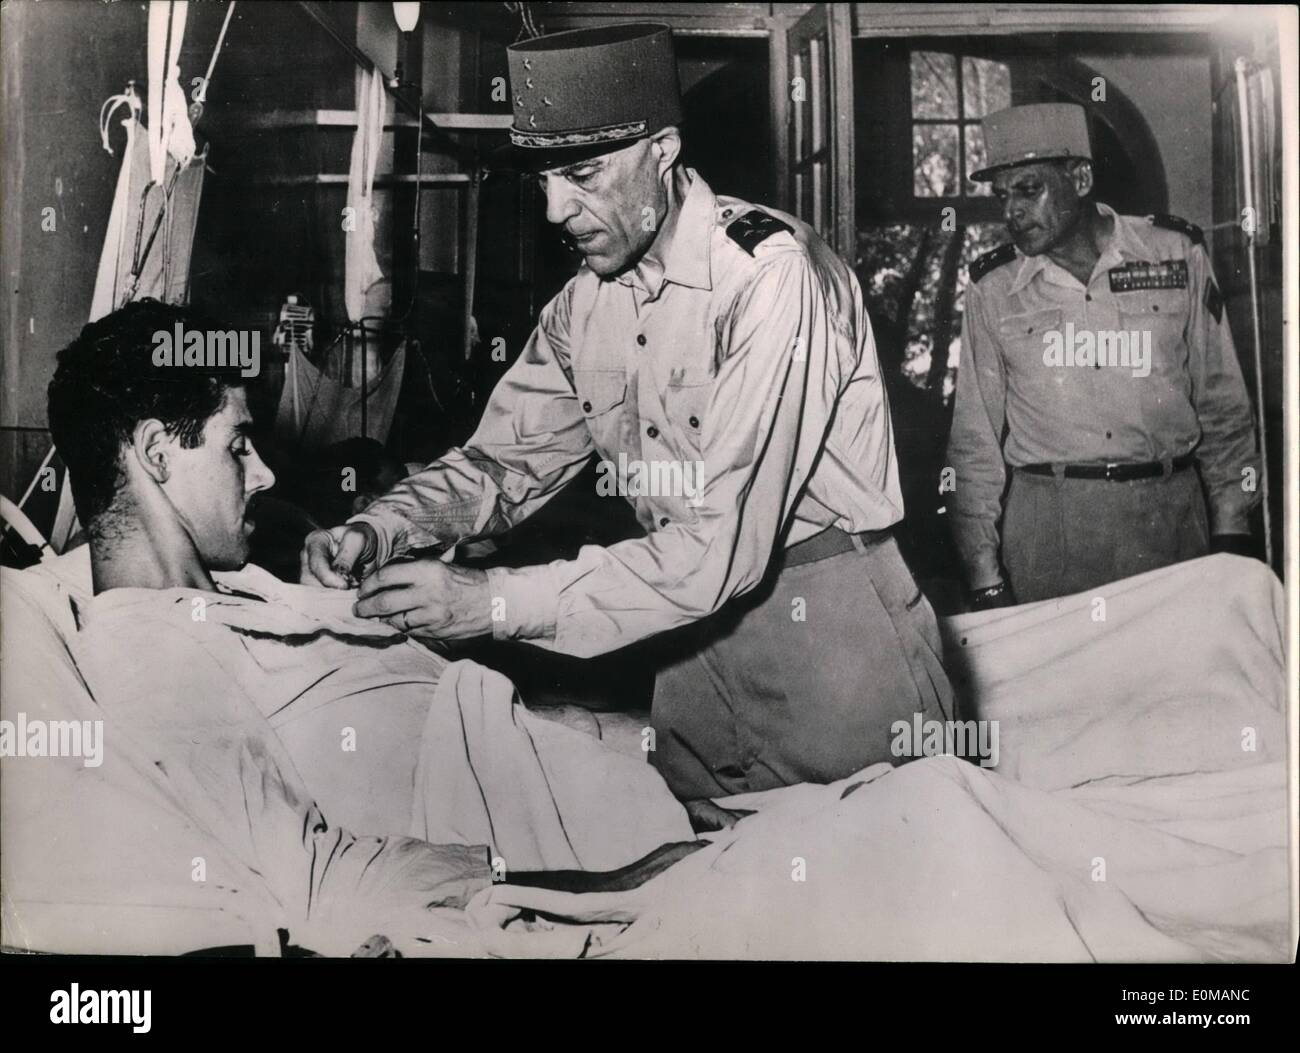 05 maggio 1954 - i soldati feriti a Dien Bien Phu battaglia decorato: Generale Ely (che ha volato a indu Cina insieme con i generali salan e pelissier di fare una relazione sulla situazione) decora un soldato francese ferito in Dien Bien Phu battaglia. Foto Stock